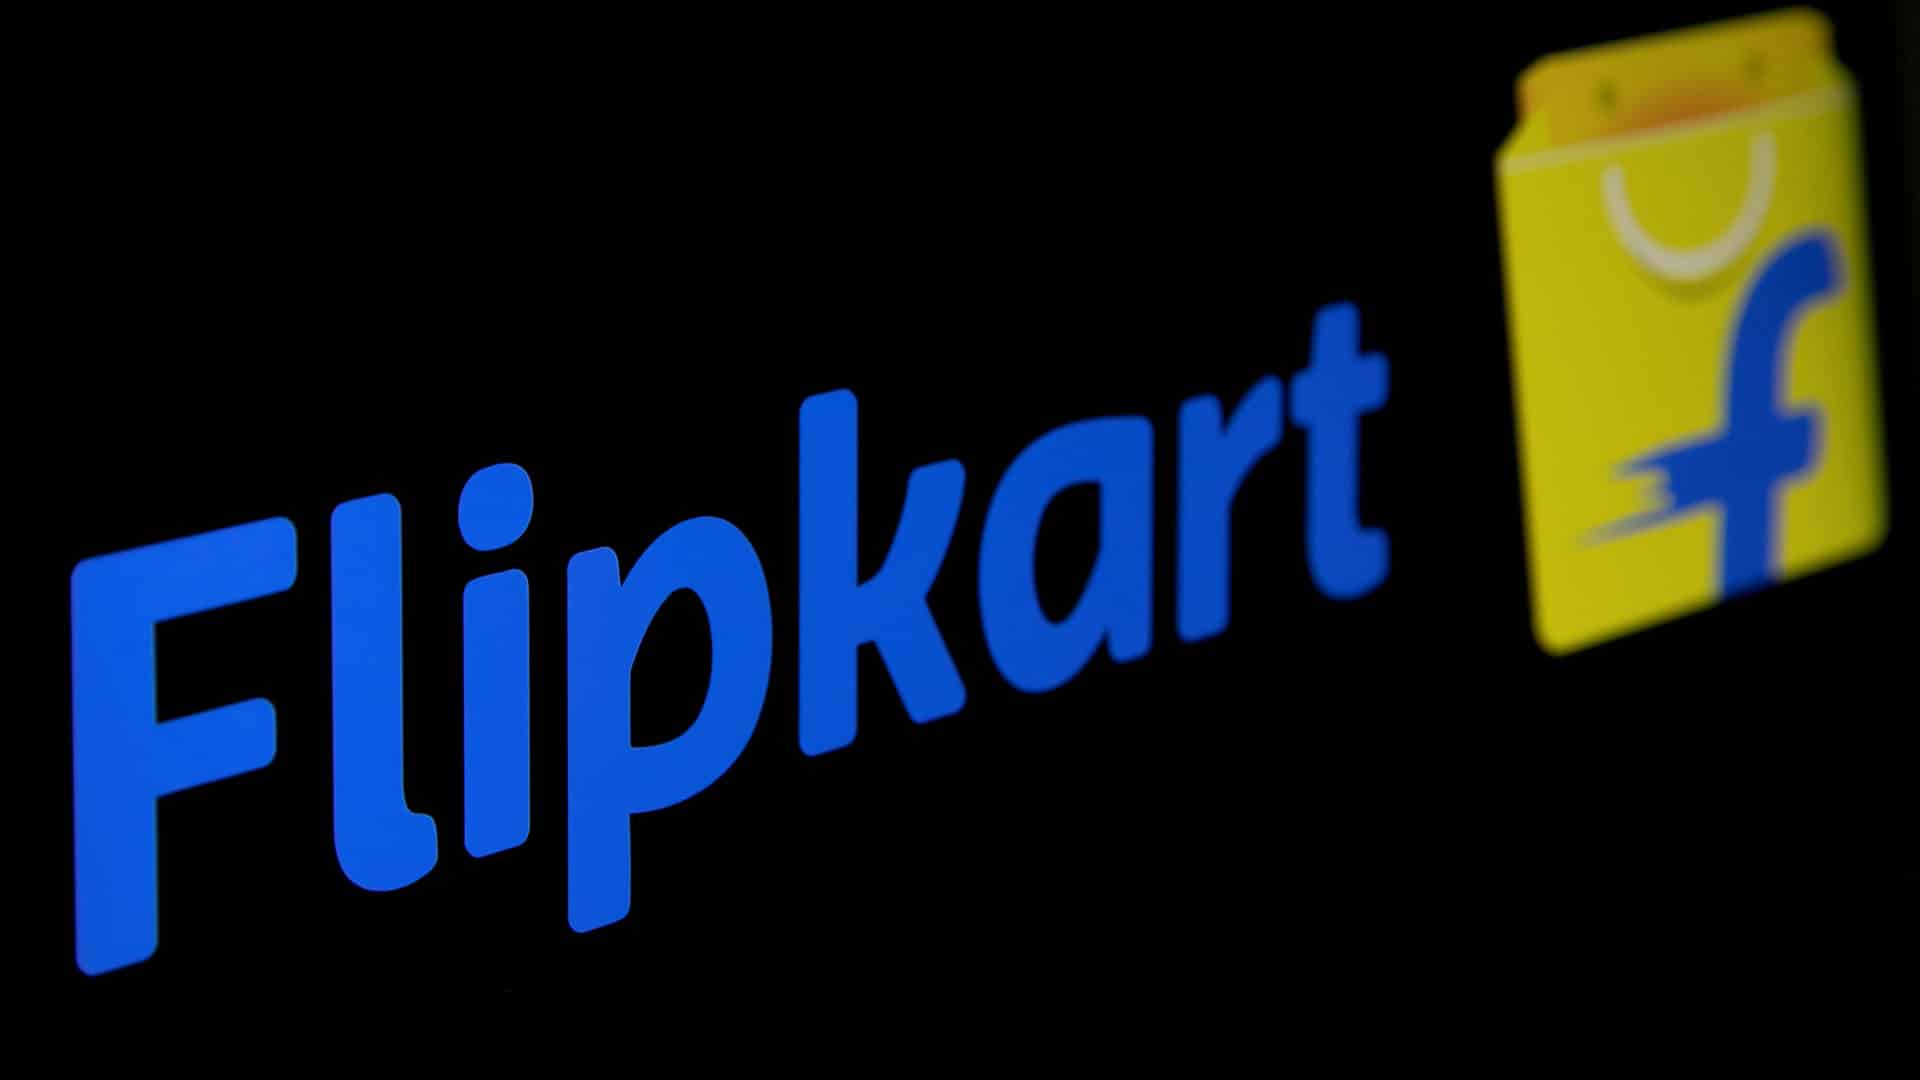 Flipkart expands 'Quick' hyperlocal service to six additional cities